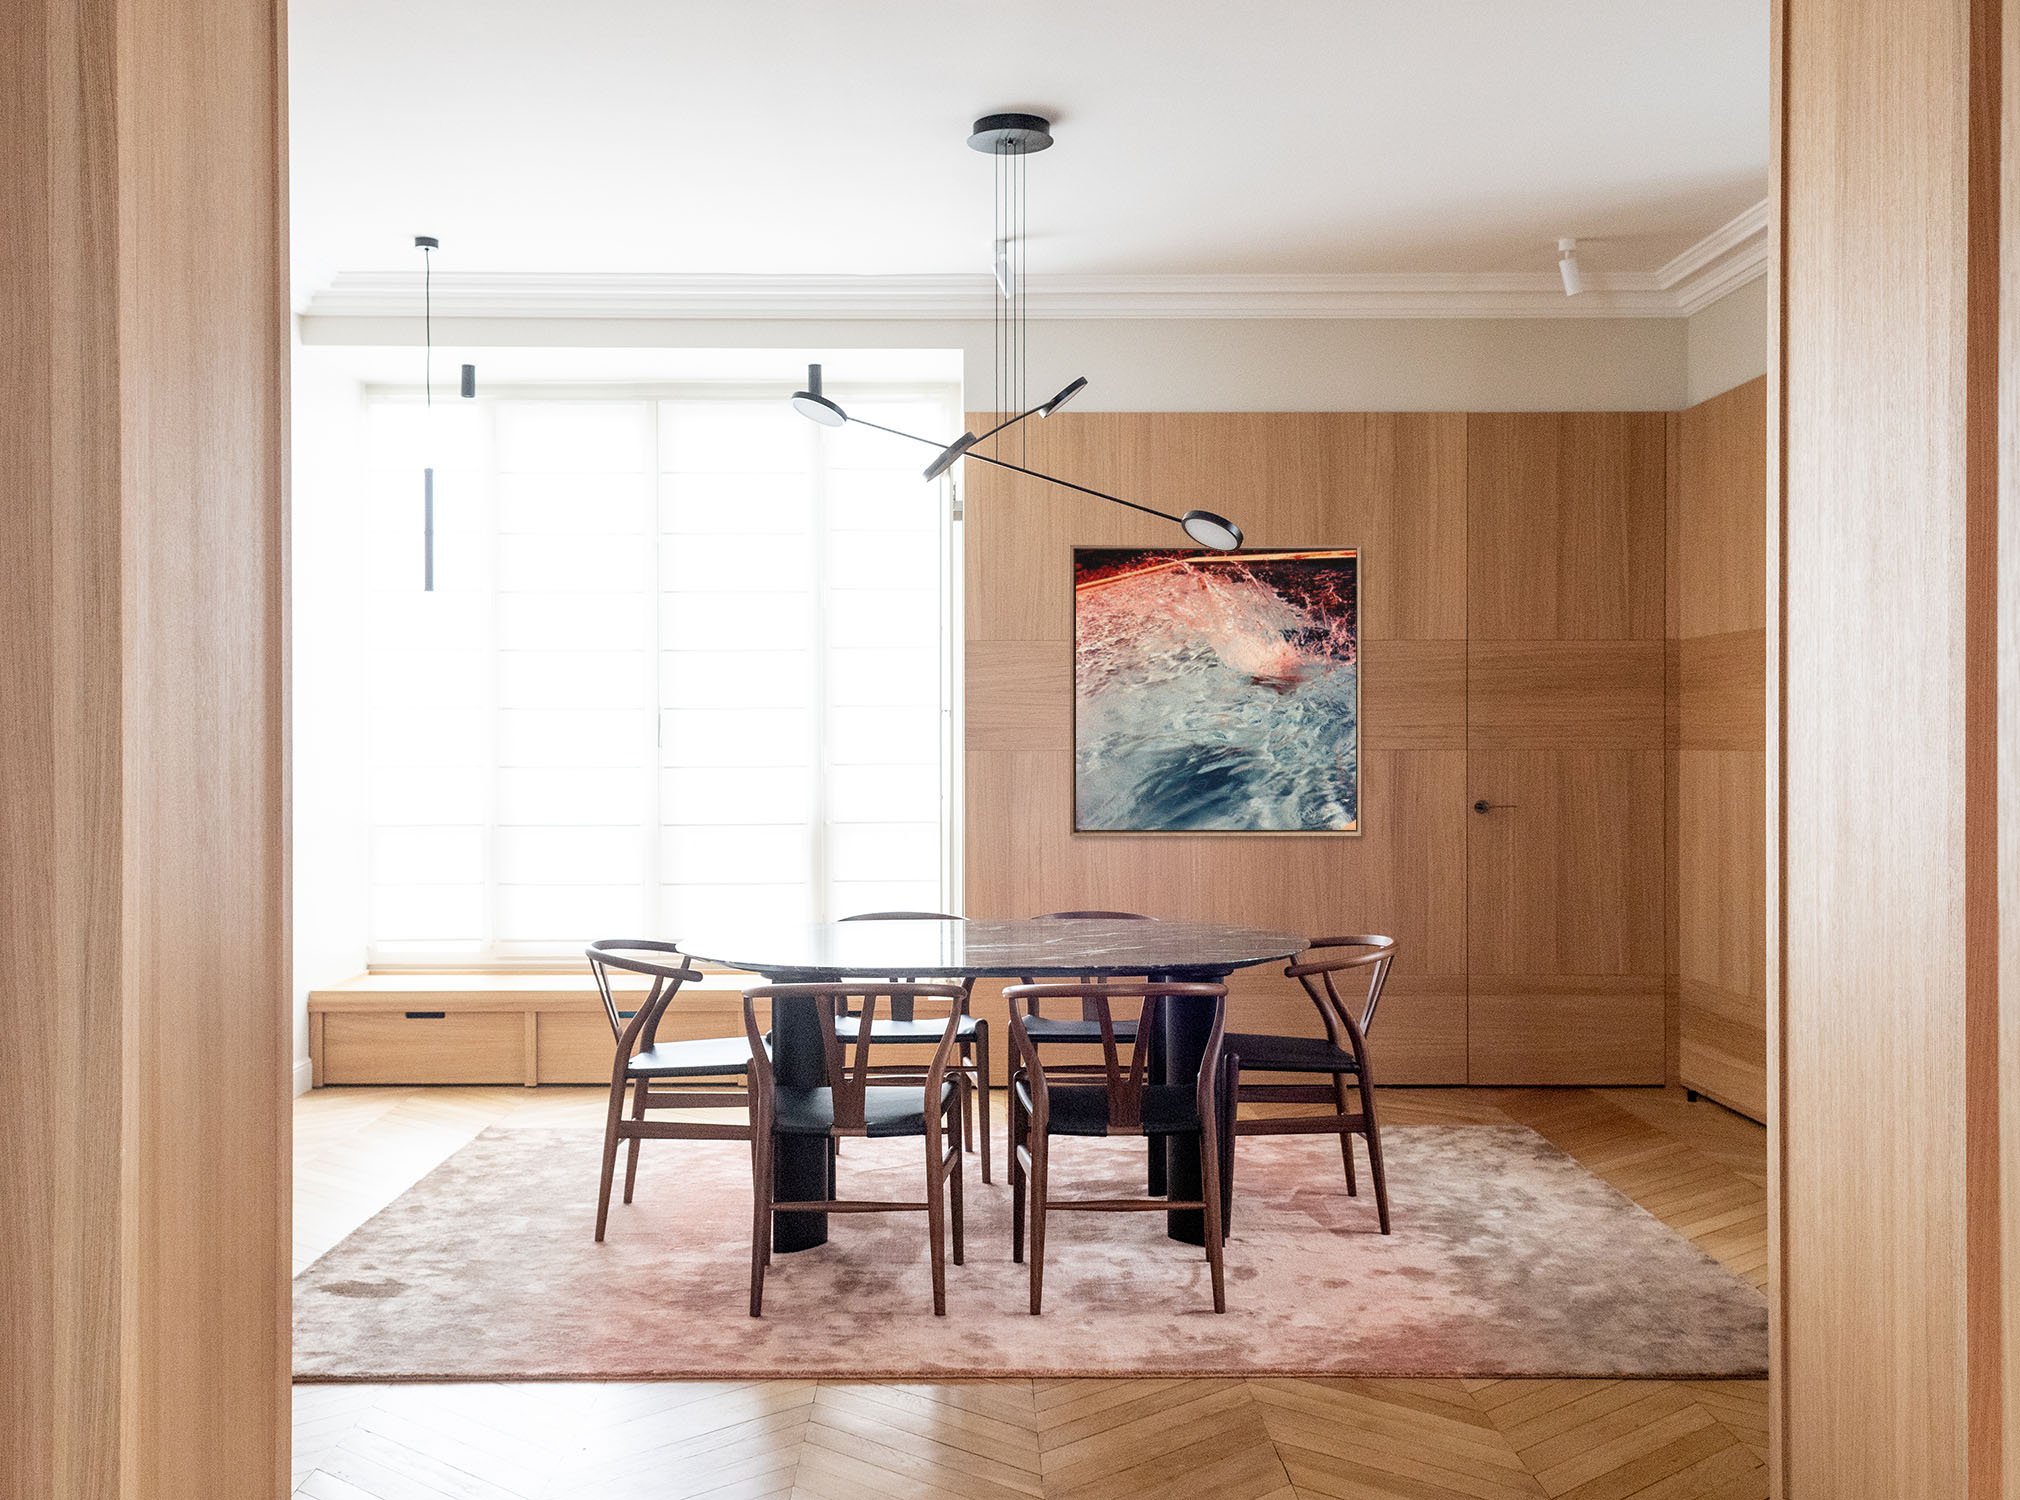  Aménagement d’un appartement rue de Sèvres, Paris  Maîtrise d’œuvre complète | 200 m² | 2022  © Nathalie Baetens 